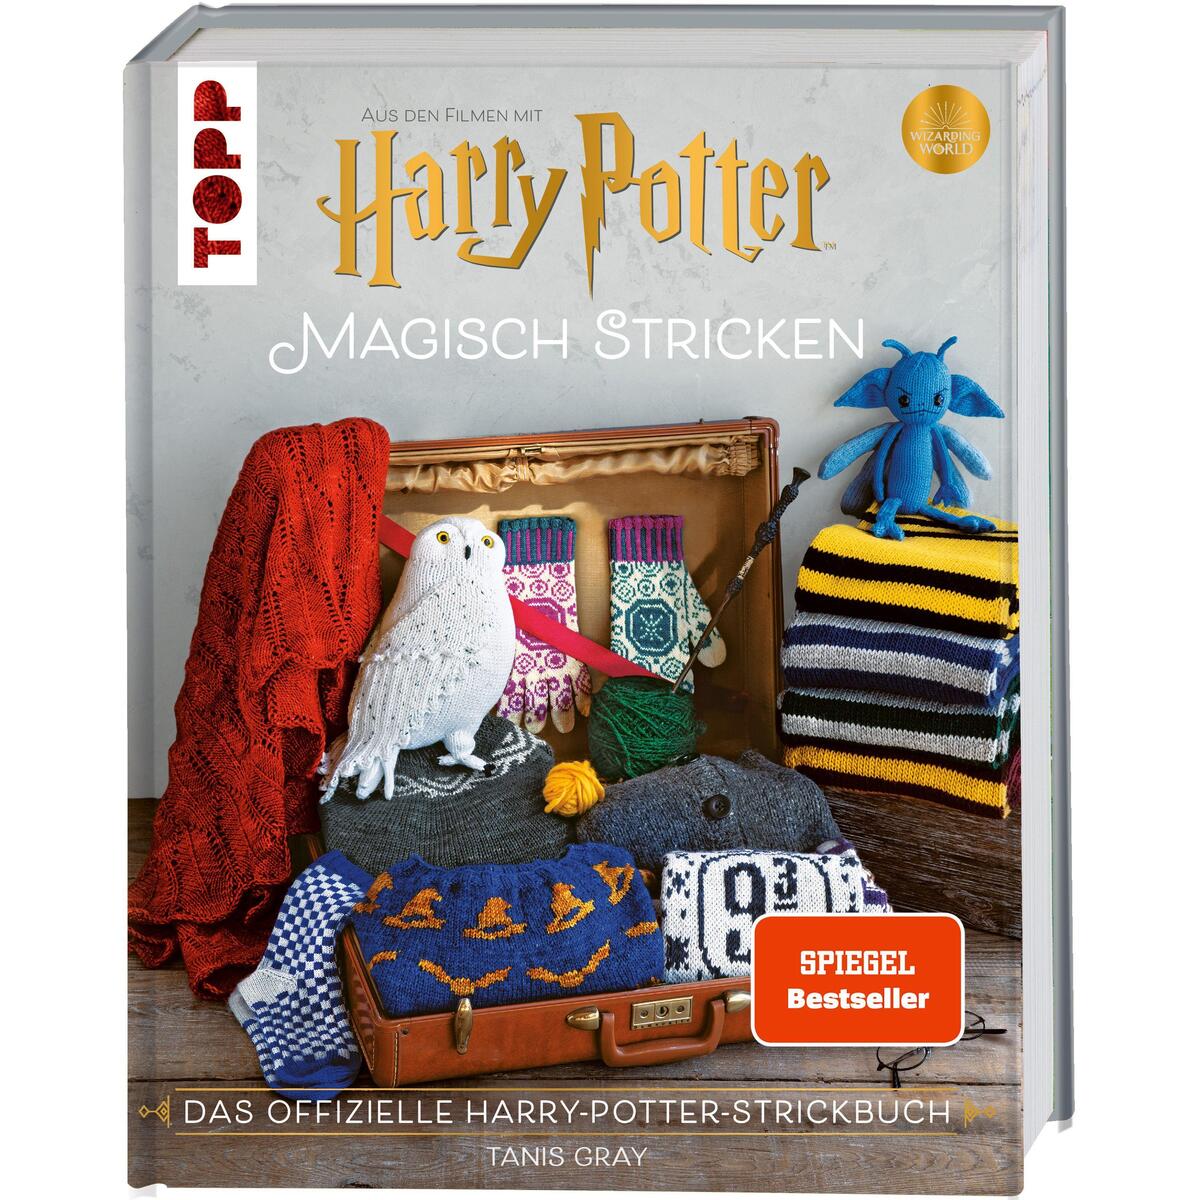 Harry Potter: Magisch stricken von Frech Verlag GmbH